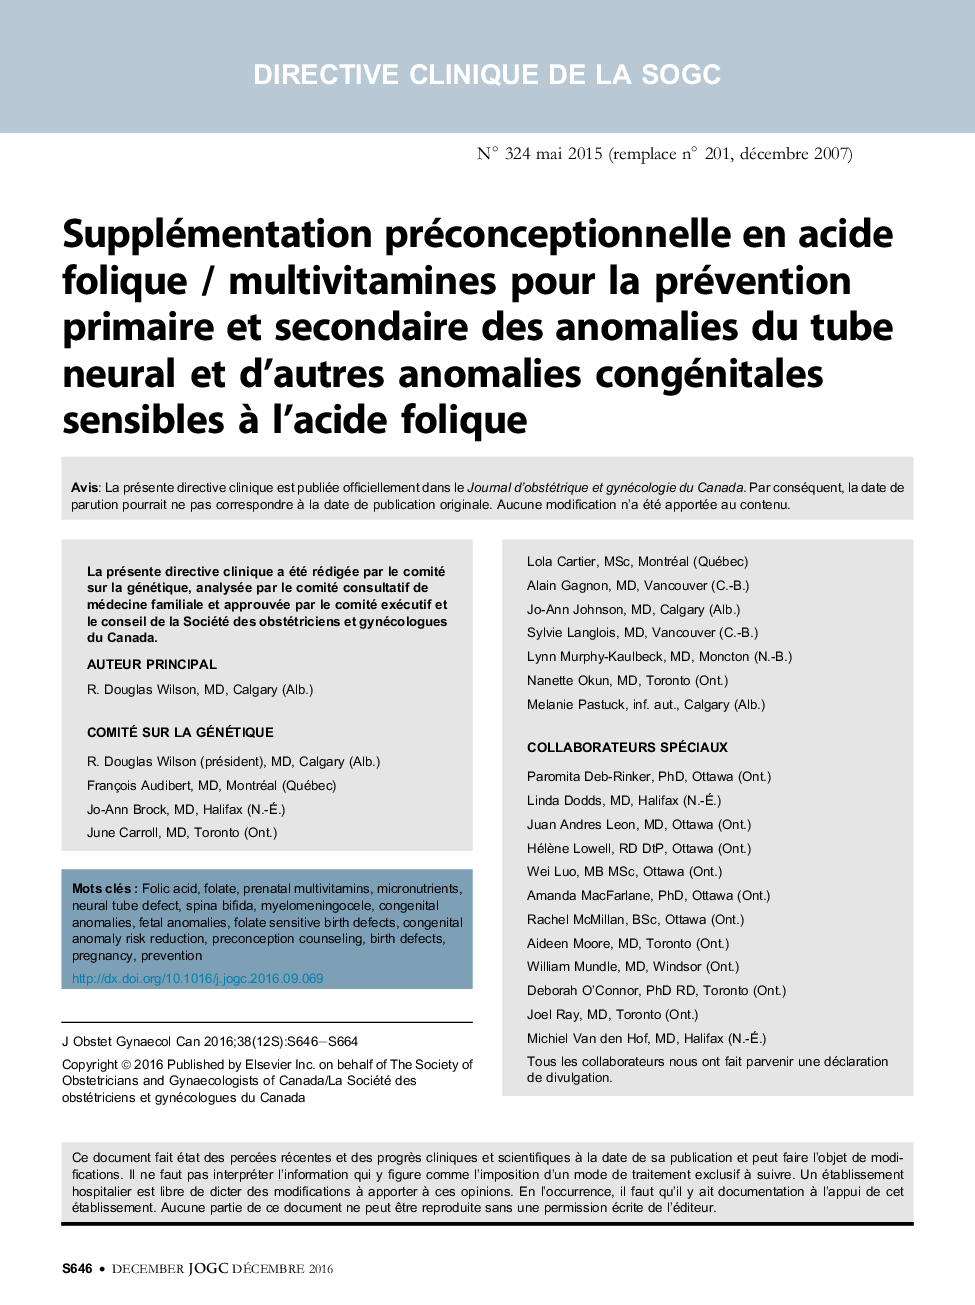 Supplémentation préconceptionnelle en acide folique / multivitamines pour la prévention primaire et secondaire des anomalies du tube neural et d'autres anomalies congénitales sensibles Ã  l'acide folique